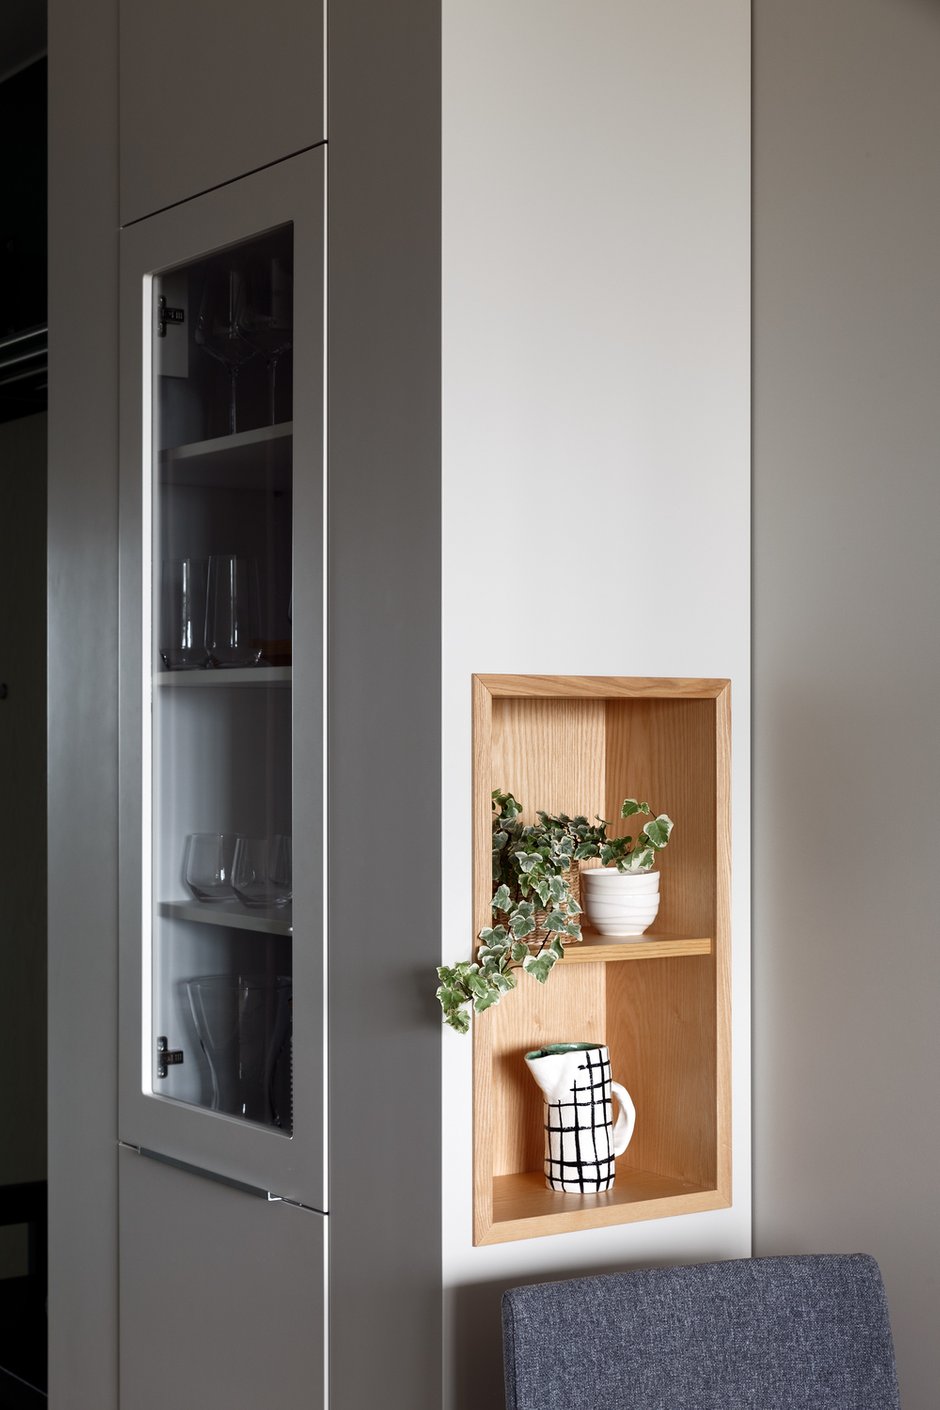 Шкаф-колонна на кухне «работает» на три стороны — фронтальную и боковые — за счет открытых полок.